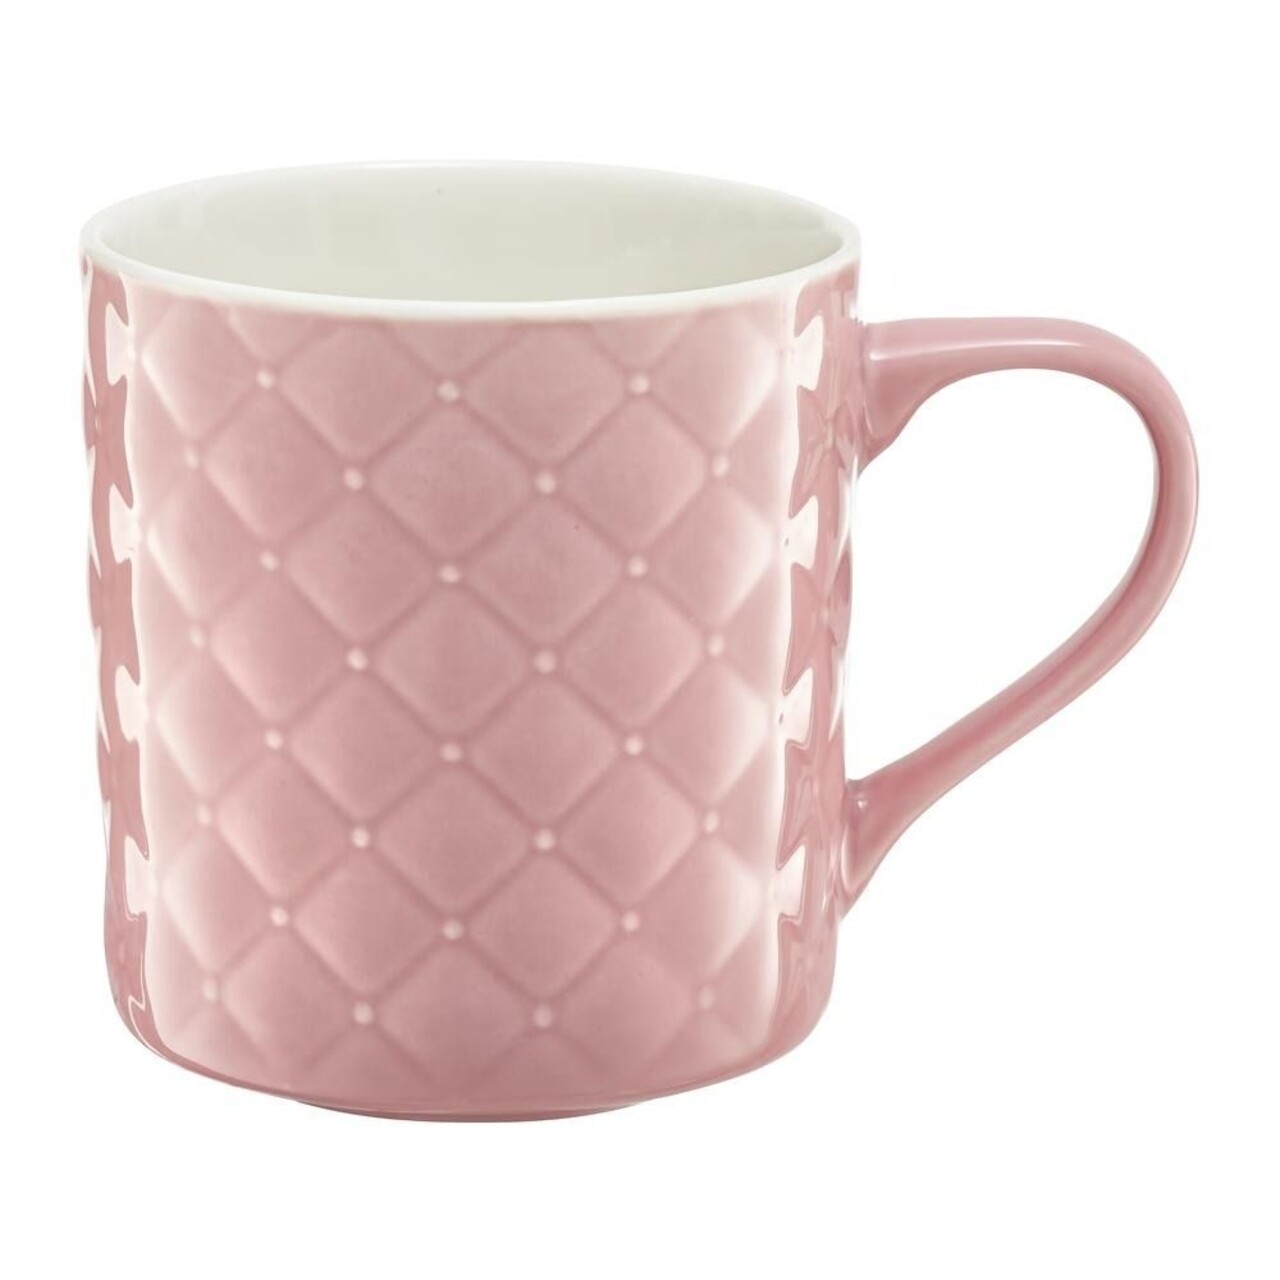 Glamour csésze, Ambition, 420 ml, porcelán, rózsaszín